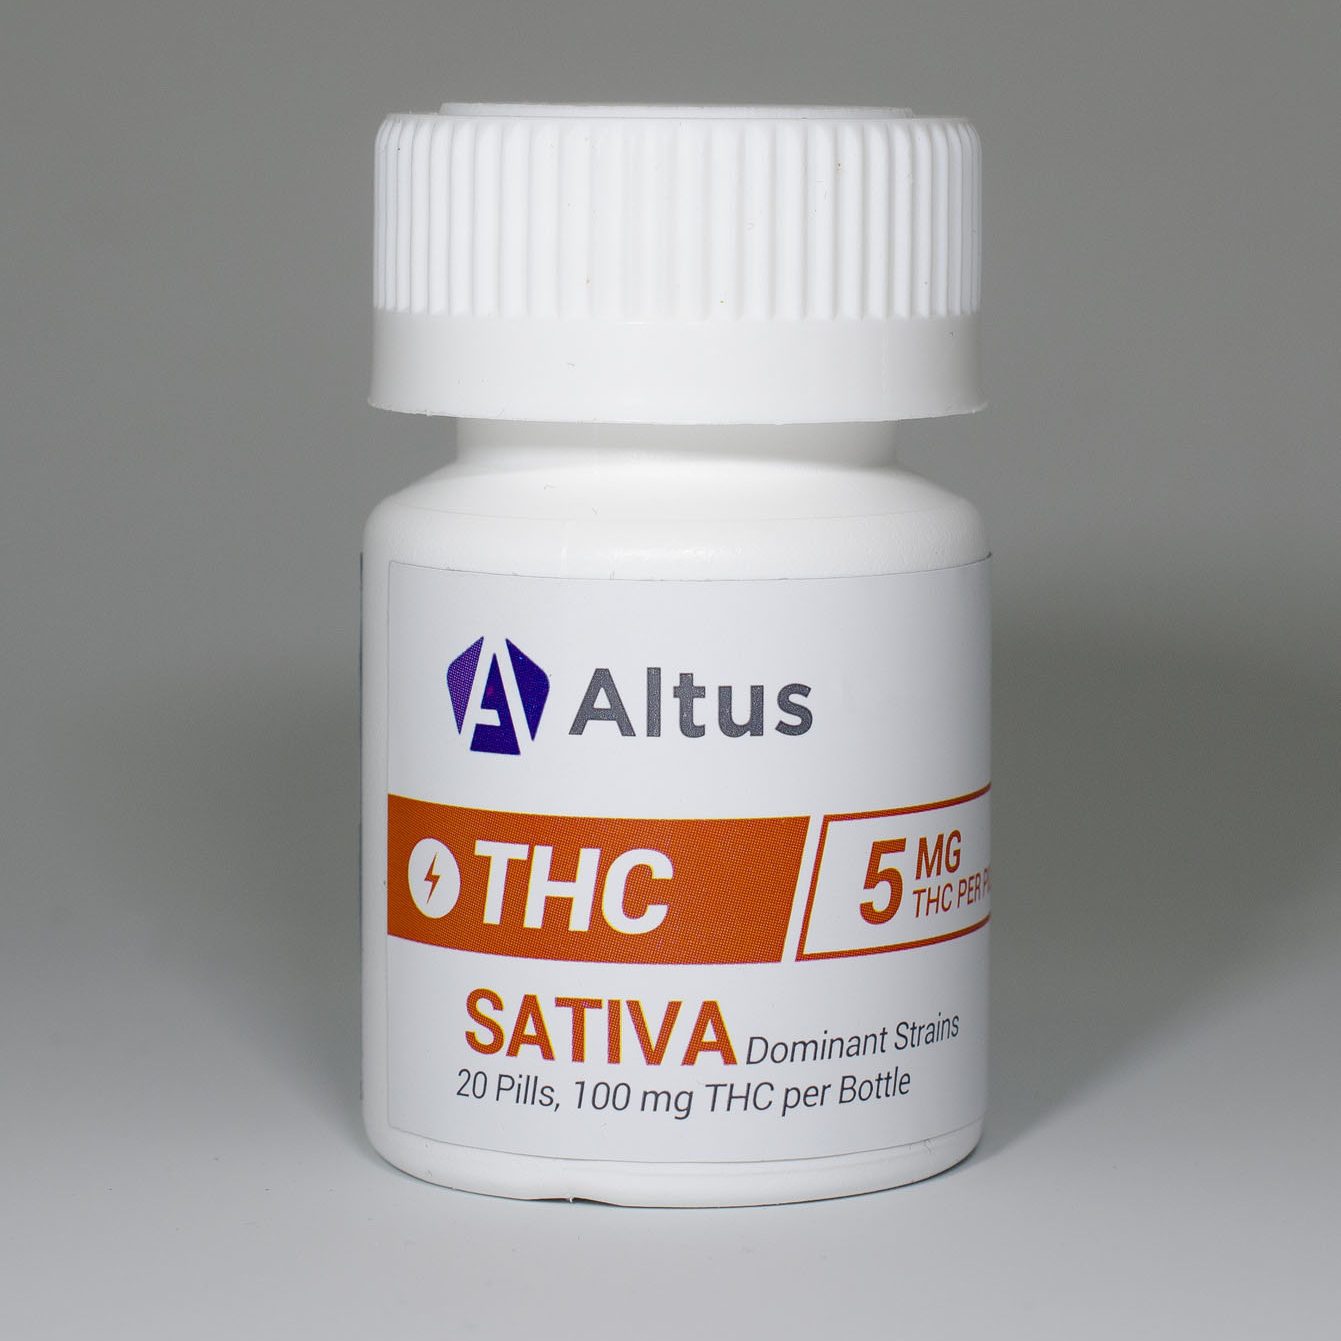 Altus THC pill bottle. White bottle containing 20 5mg THC pills.